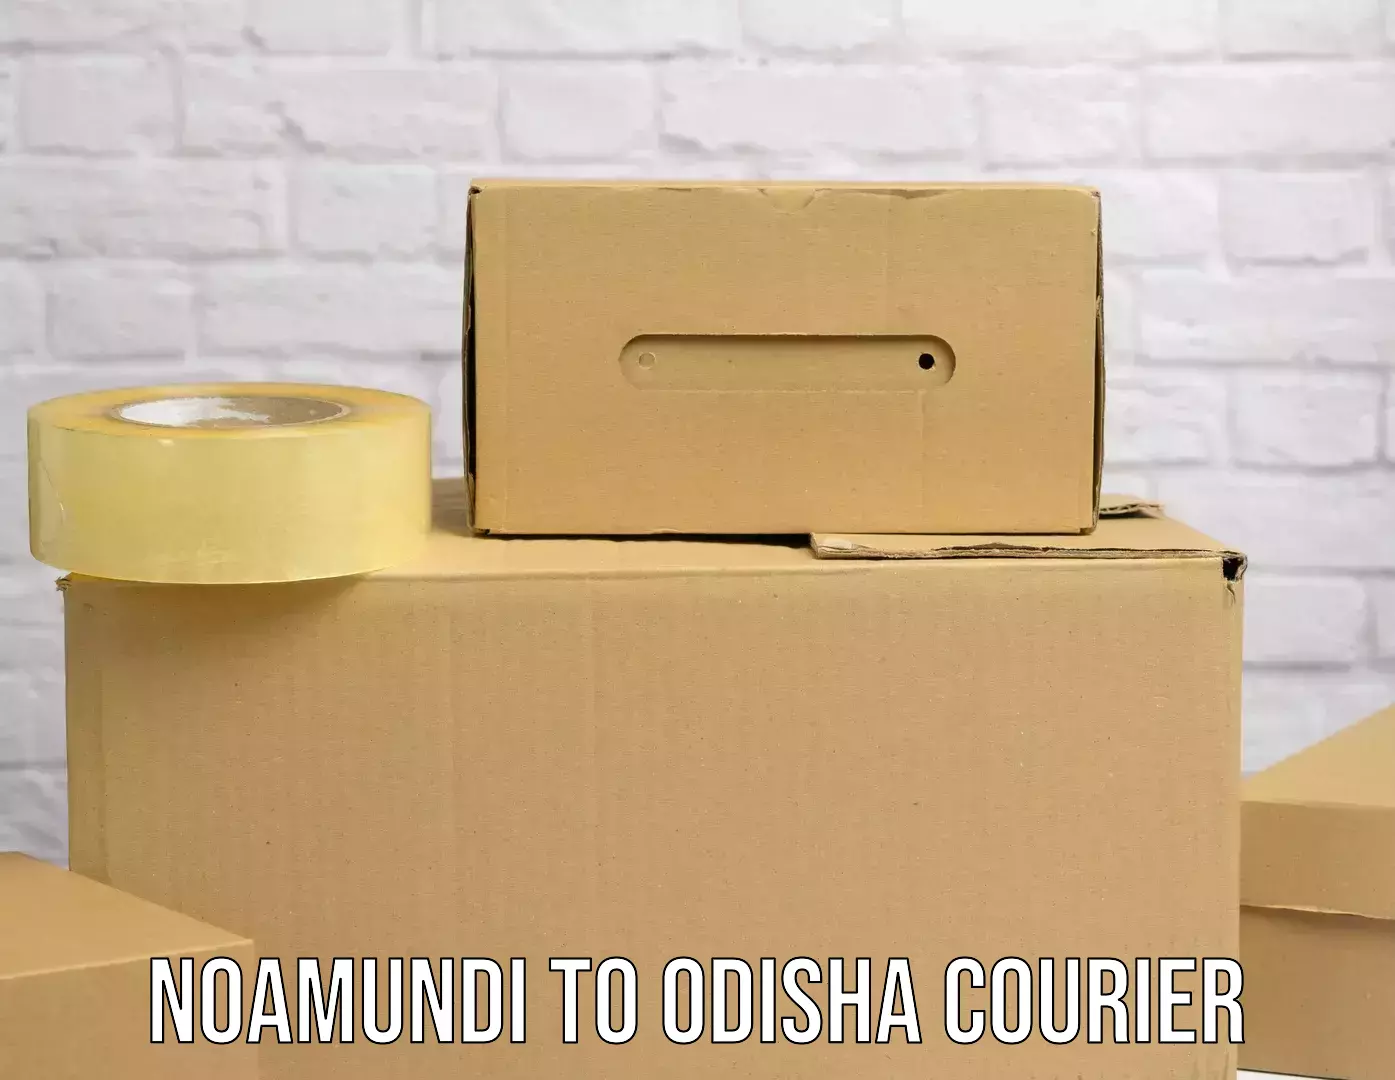 Large-scale shipping solutions Noamundi to Odisha